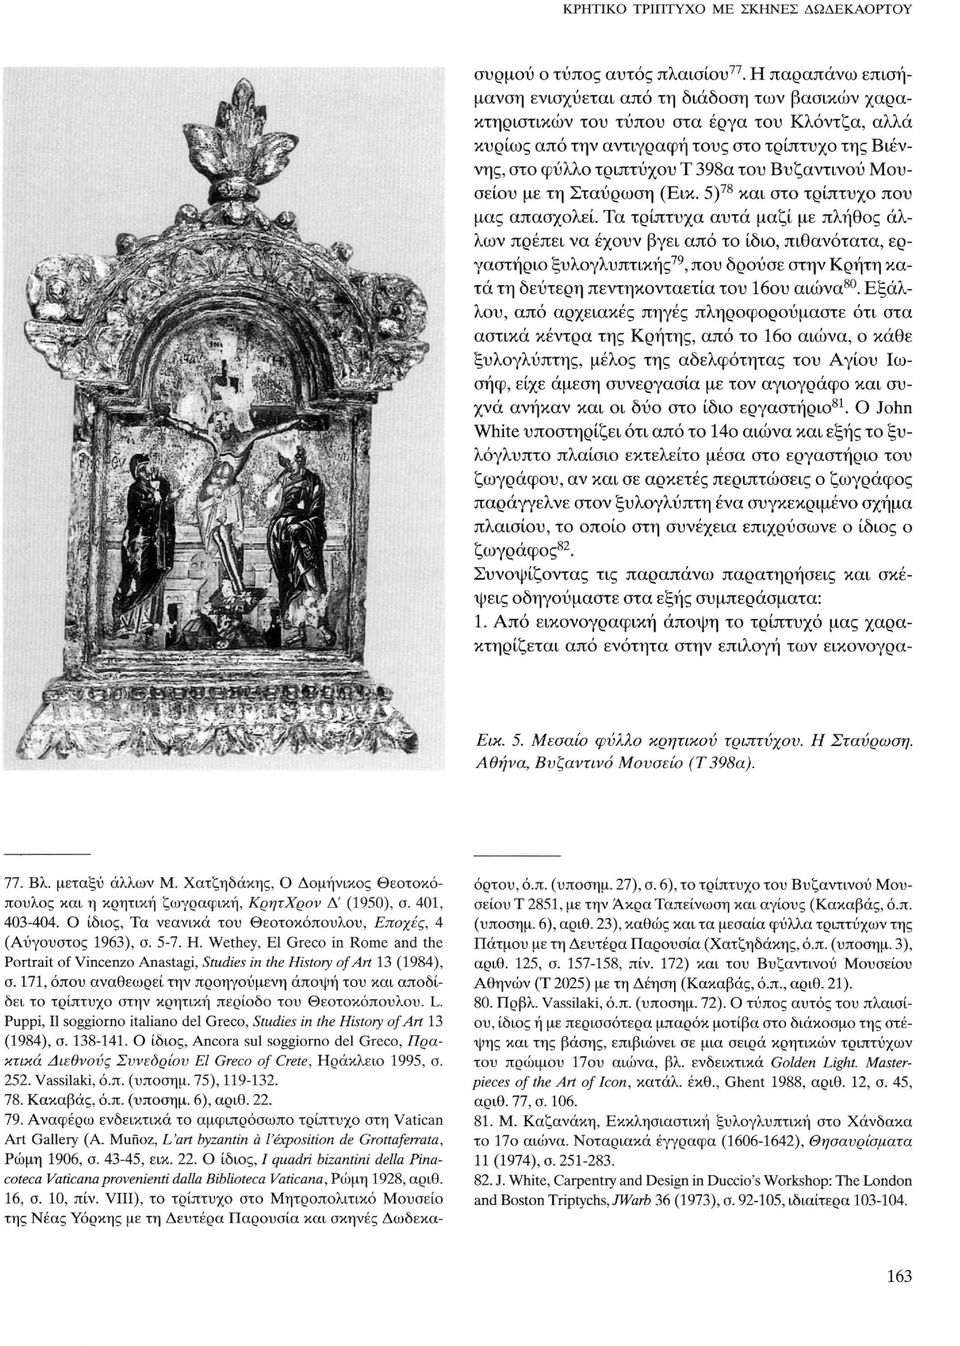 171, όπου αναθεωρεί την προηγούμενη άποψη του και αποδίδει το τρίπτυχο στην κρητική περίοδο του Θεοτοκόπουλου. L. Puppi, Il soggiorno italiano del Greco, Studies in the History of Art 13 (1984), σ.